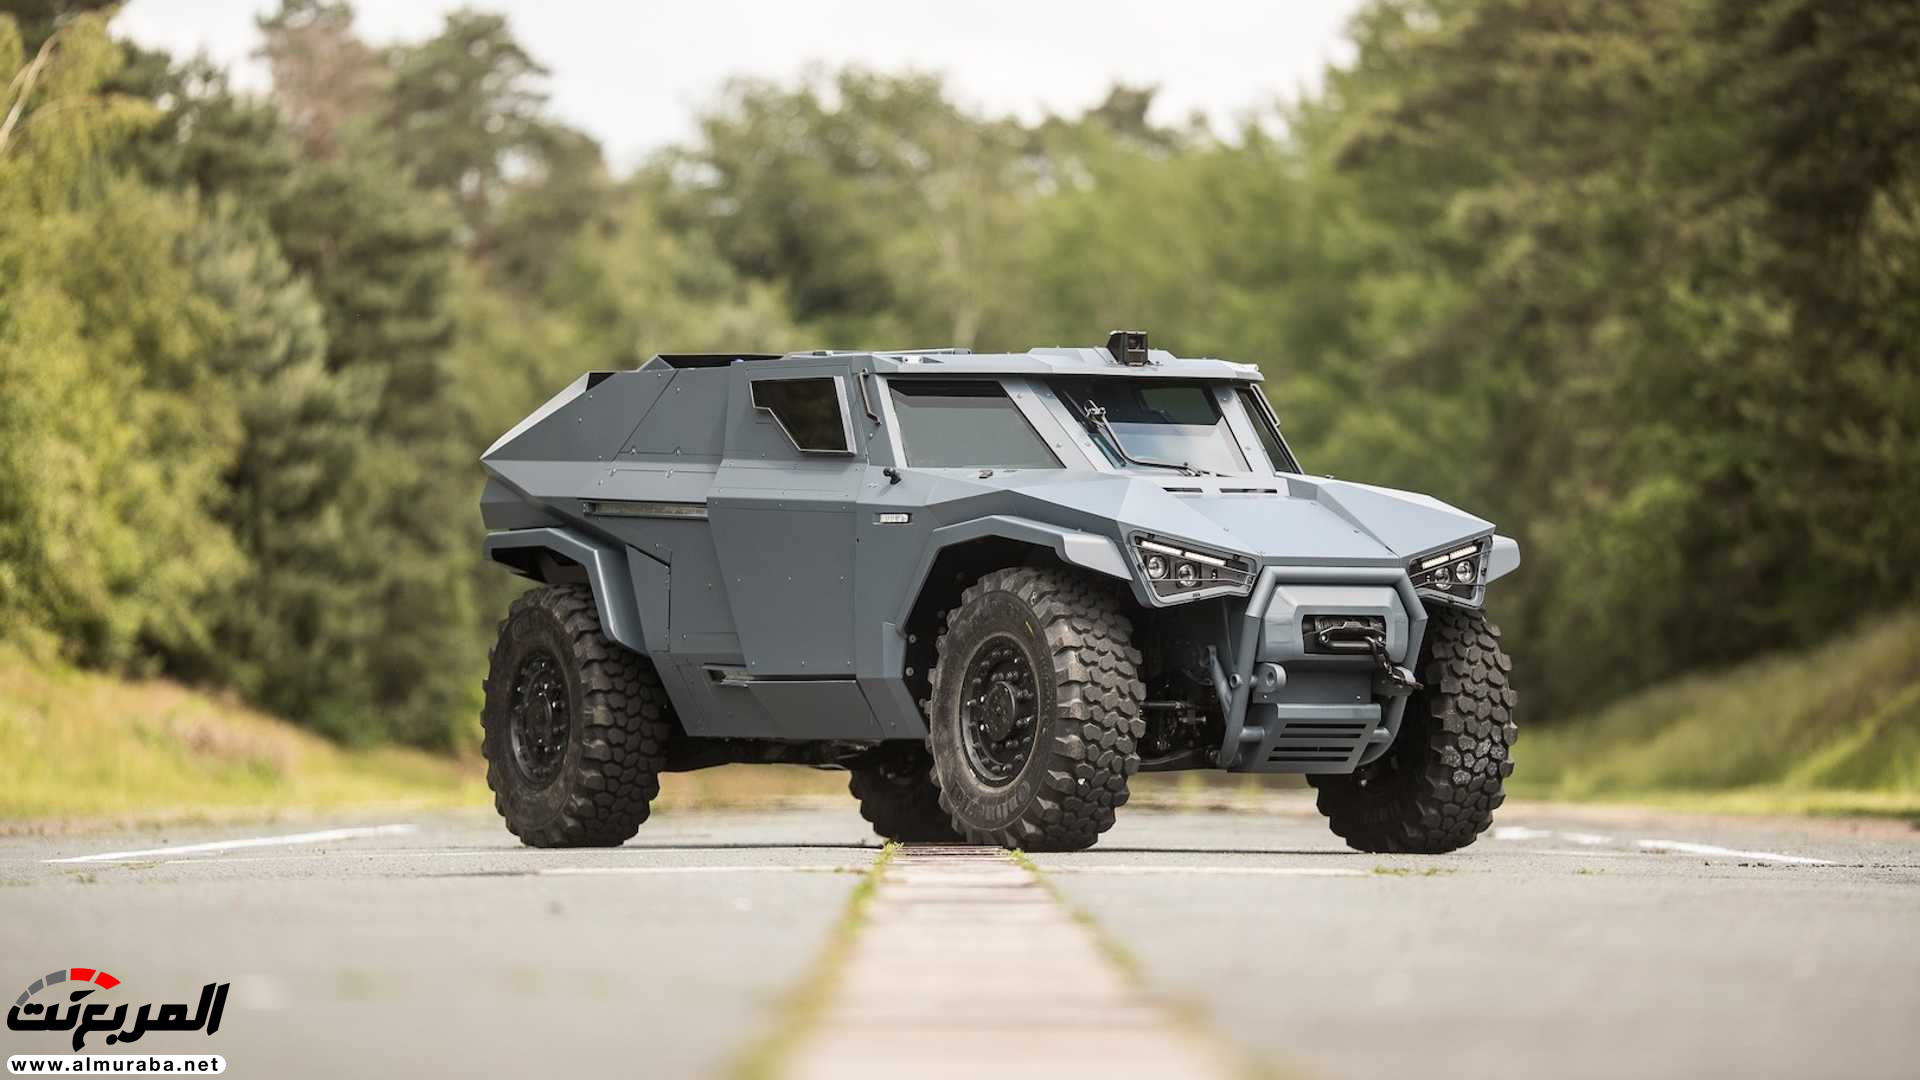 "بالفيديو والصور" فولفو صنعت سيارة عسكرية تنافس همر 18